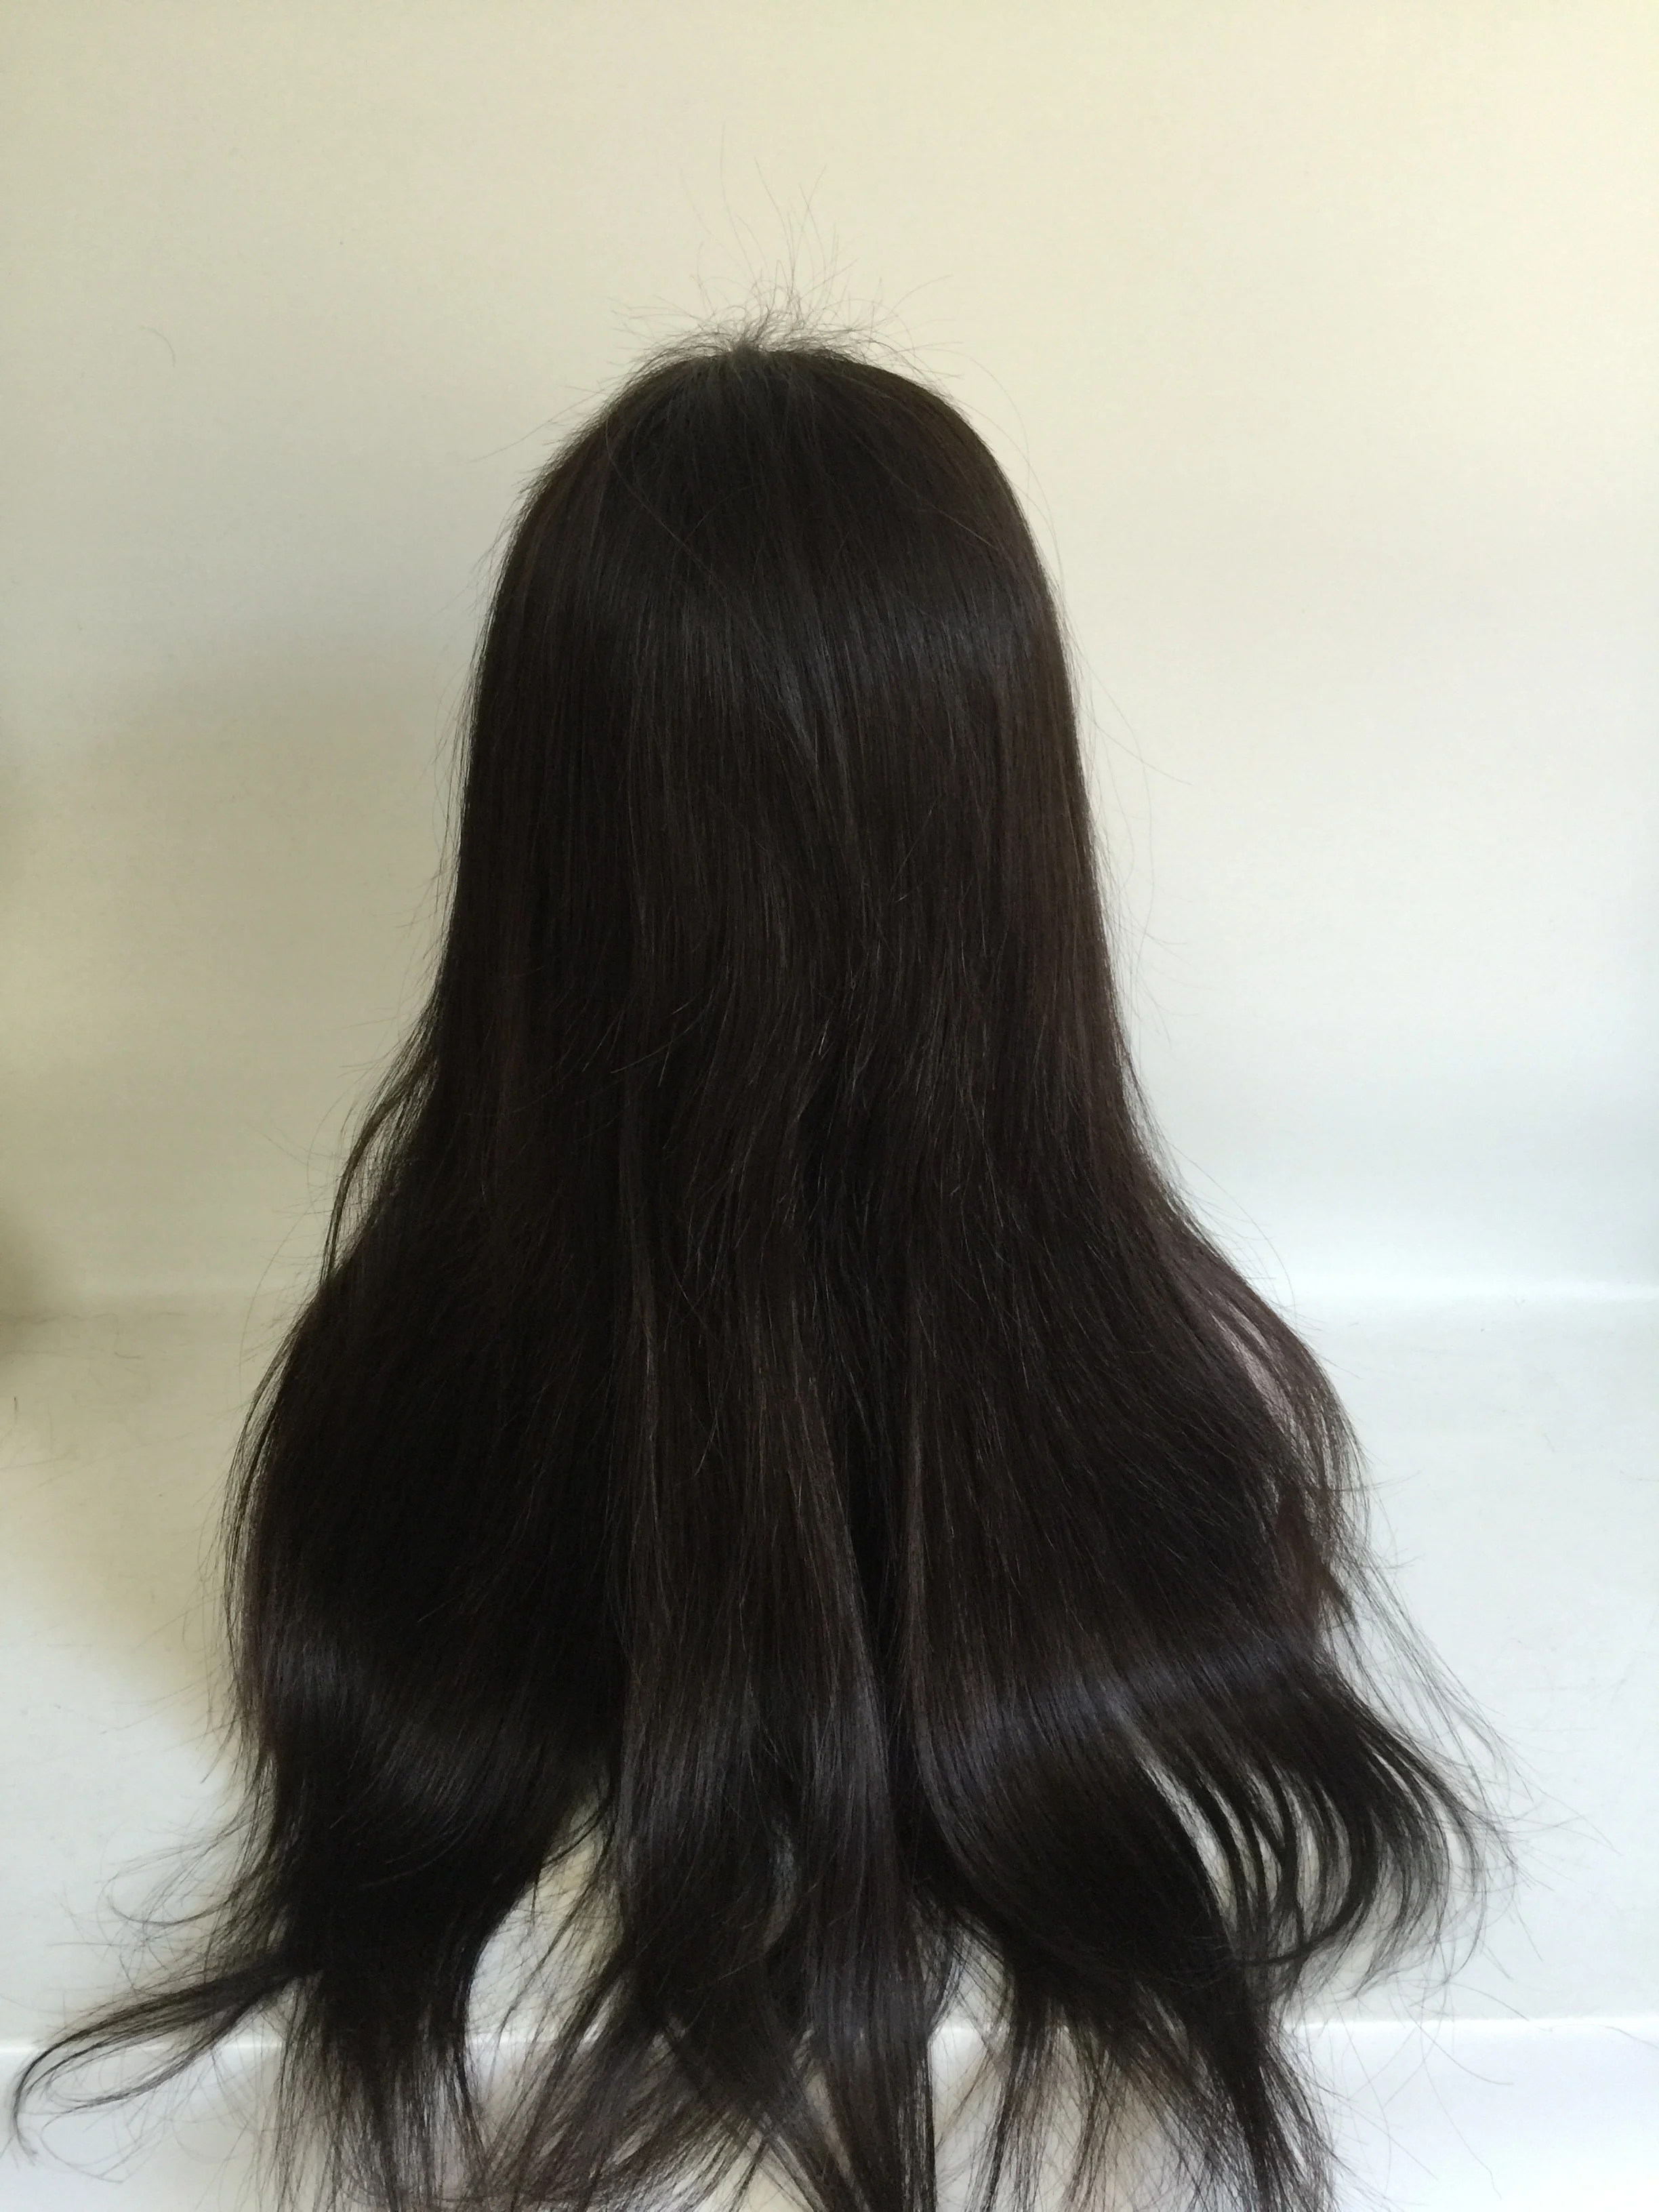 头发材料 100% 人发 头发的颜色 天然黑色 头发长度 20英寸的选择